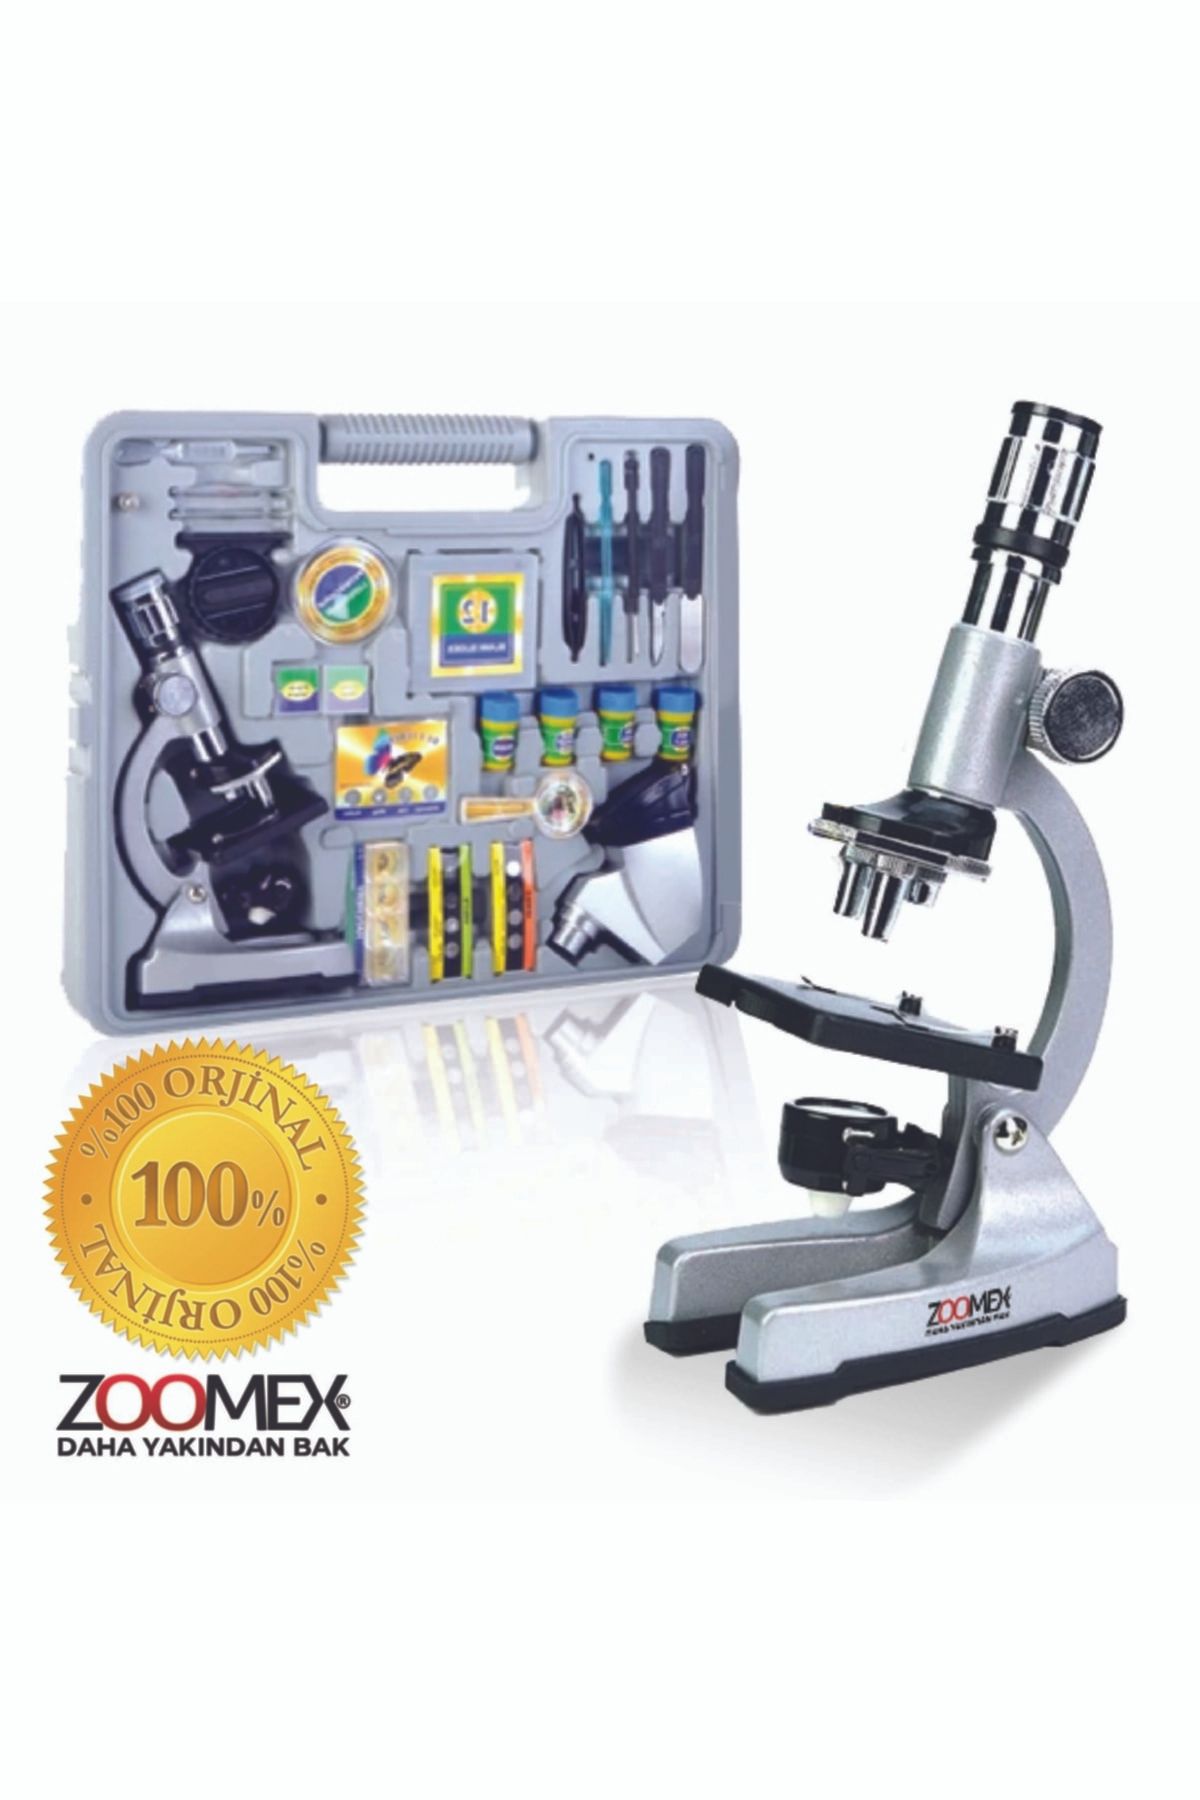 Zoomex ZKSTX-1200 Mikroskop Seti - Taşıma Çantası Hediyeli- Eğitici ve Öğretici